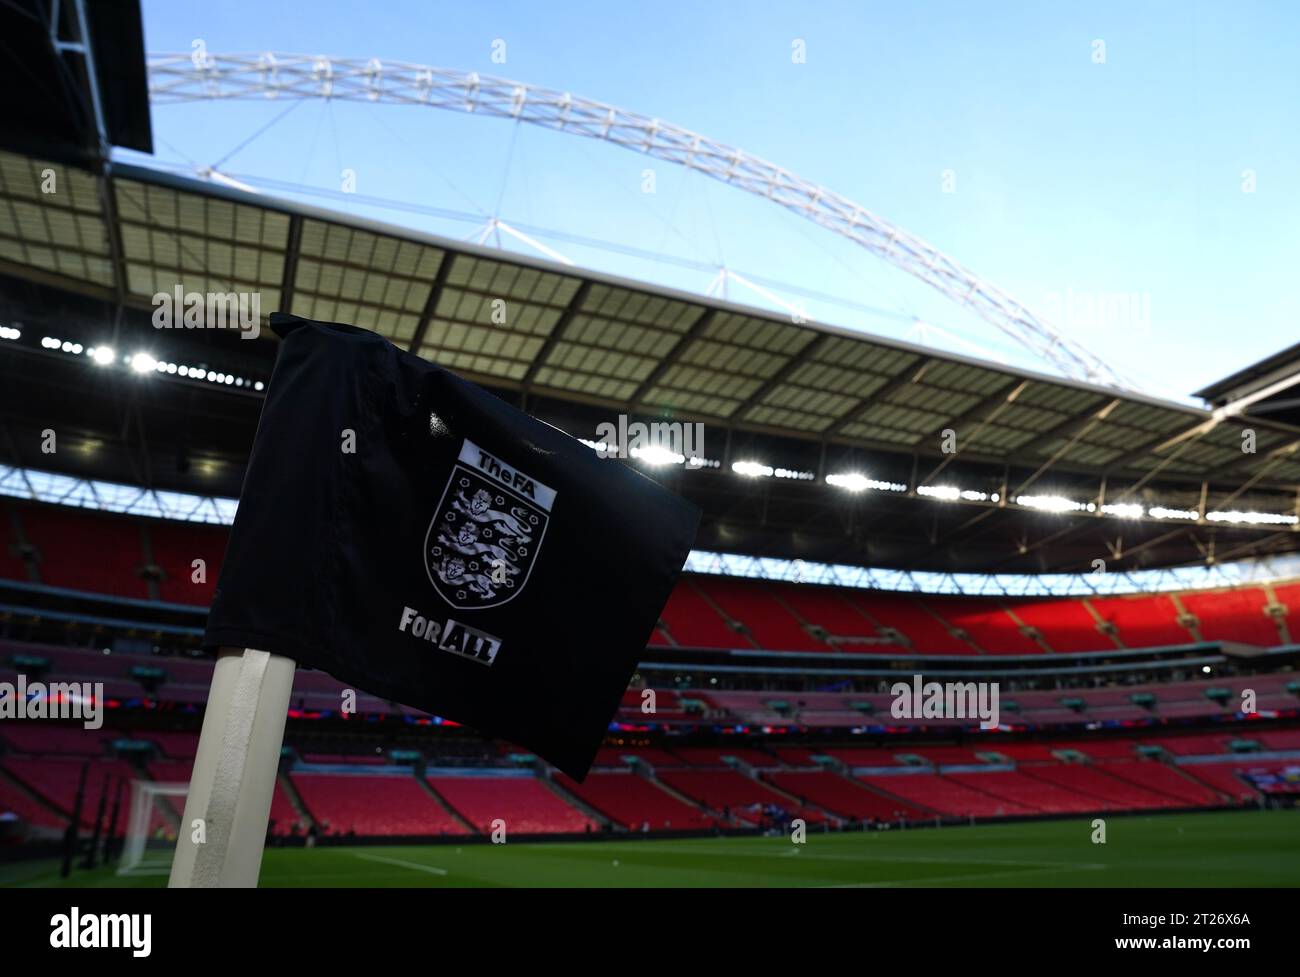 Vista generale dall'interno dello stadio in vista della partita di qualificazione a Euro 2024 allo stadio Wembley di Londra. Data immagine: Martedì 17 ottobre 2023. Foto Stock